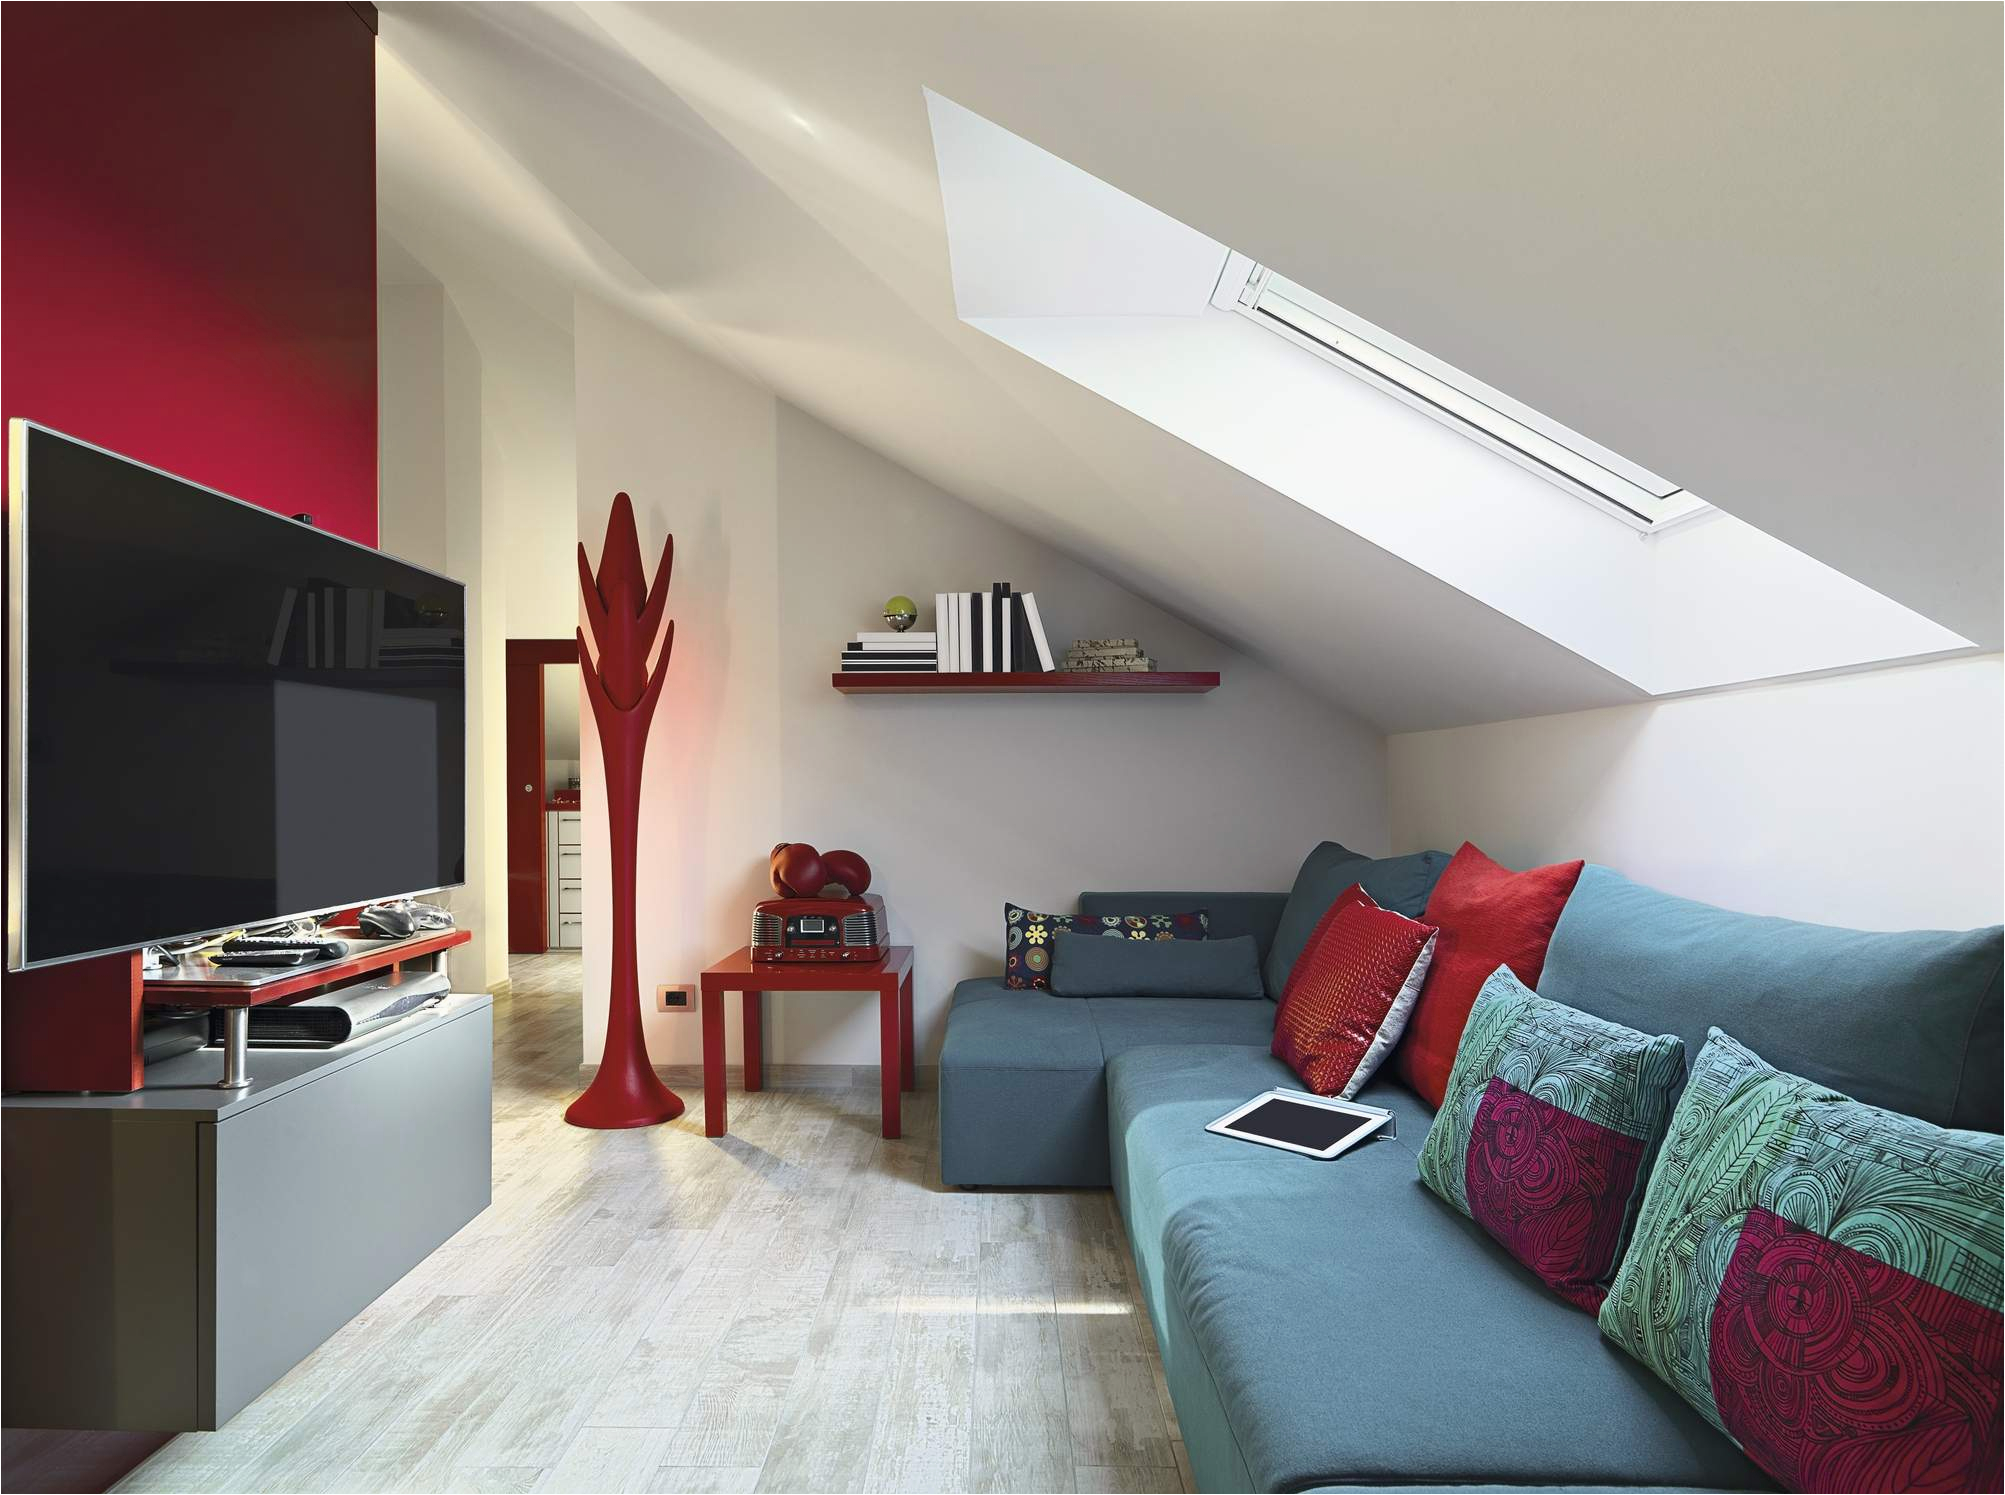 wohnzimmer mit dachschrage luxus zimmer mit dachschrgen jede ecke sinnvoll nutzen zimmer mit of wohnzimmer mit dachschrage